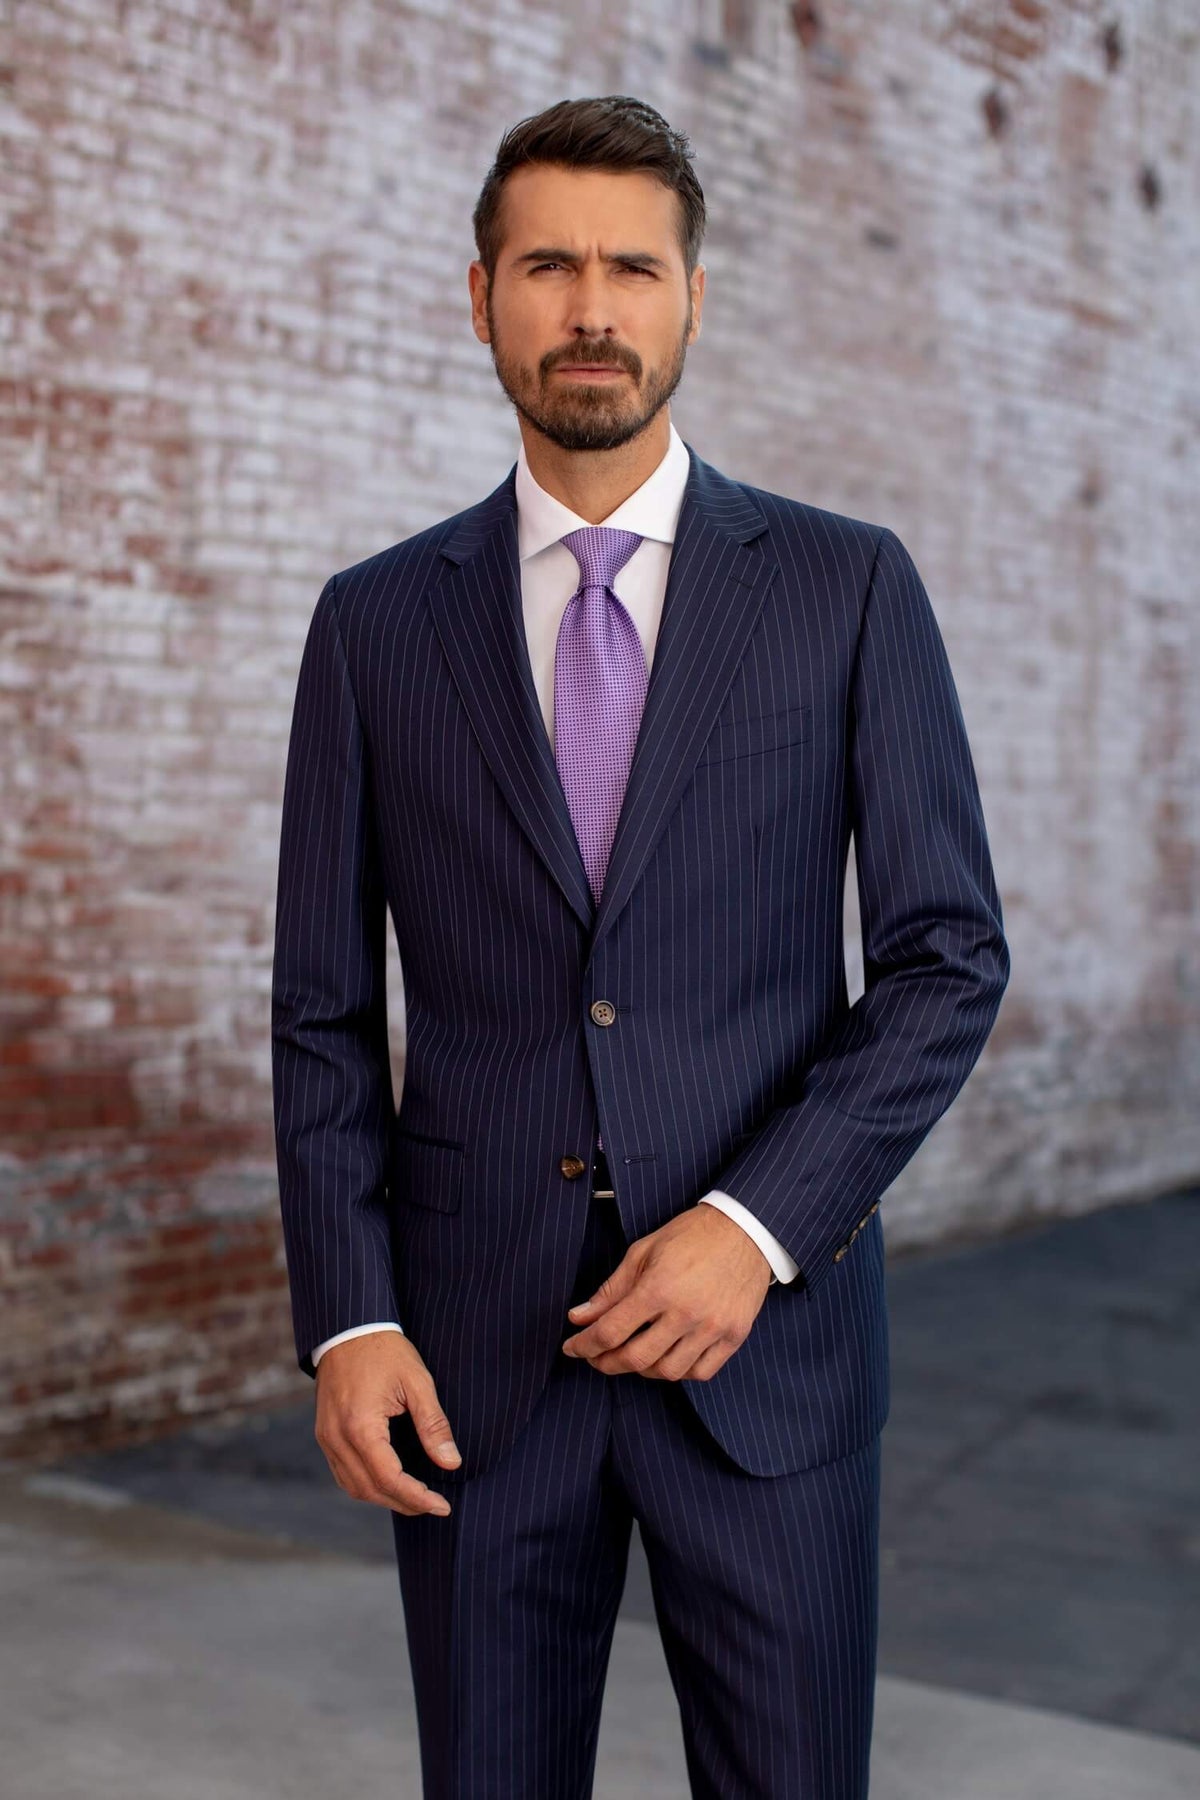 Mens Suit - Tailored Suits - augusttailor.com